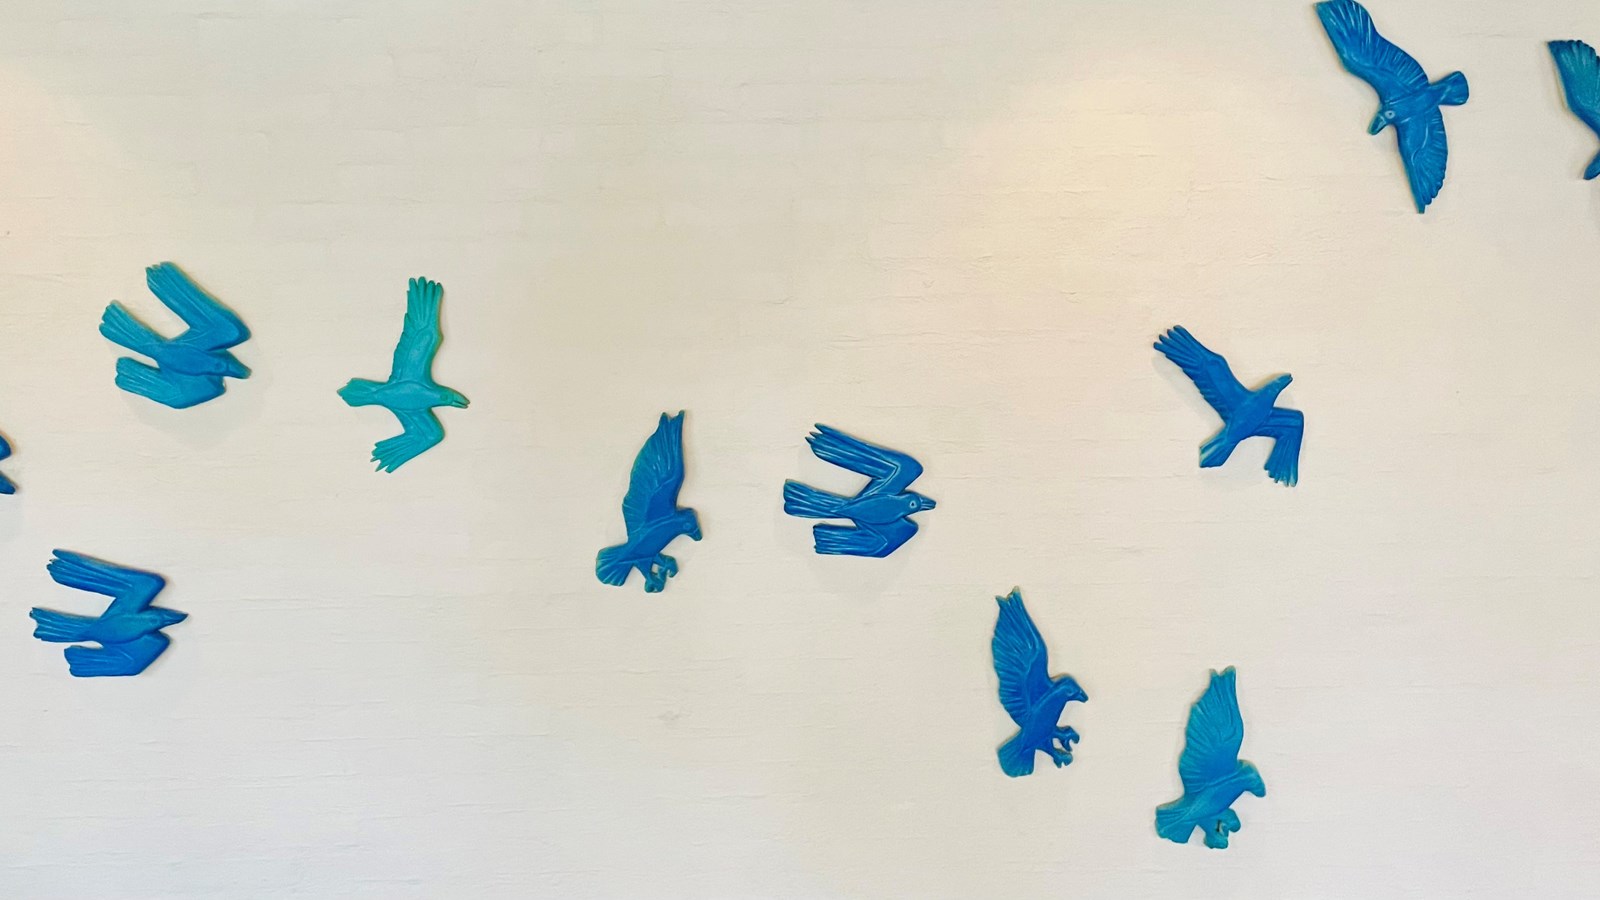 Jobcenter Integration væg med blå fugle